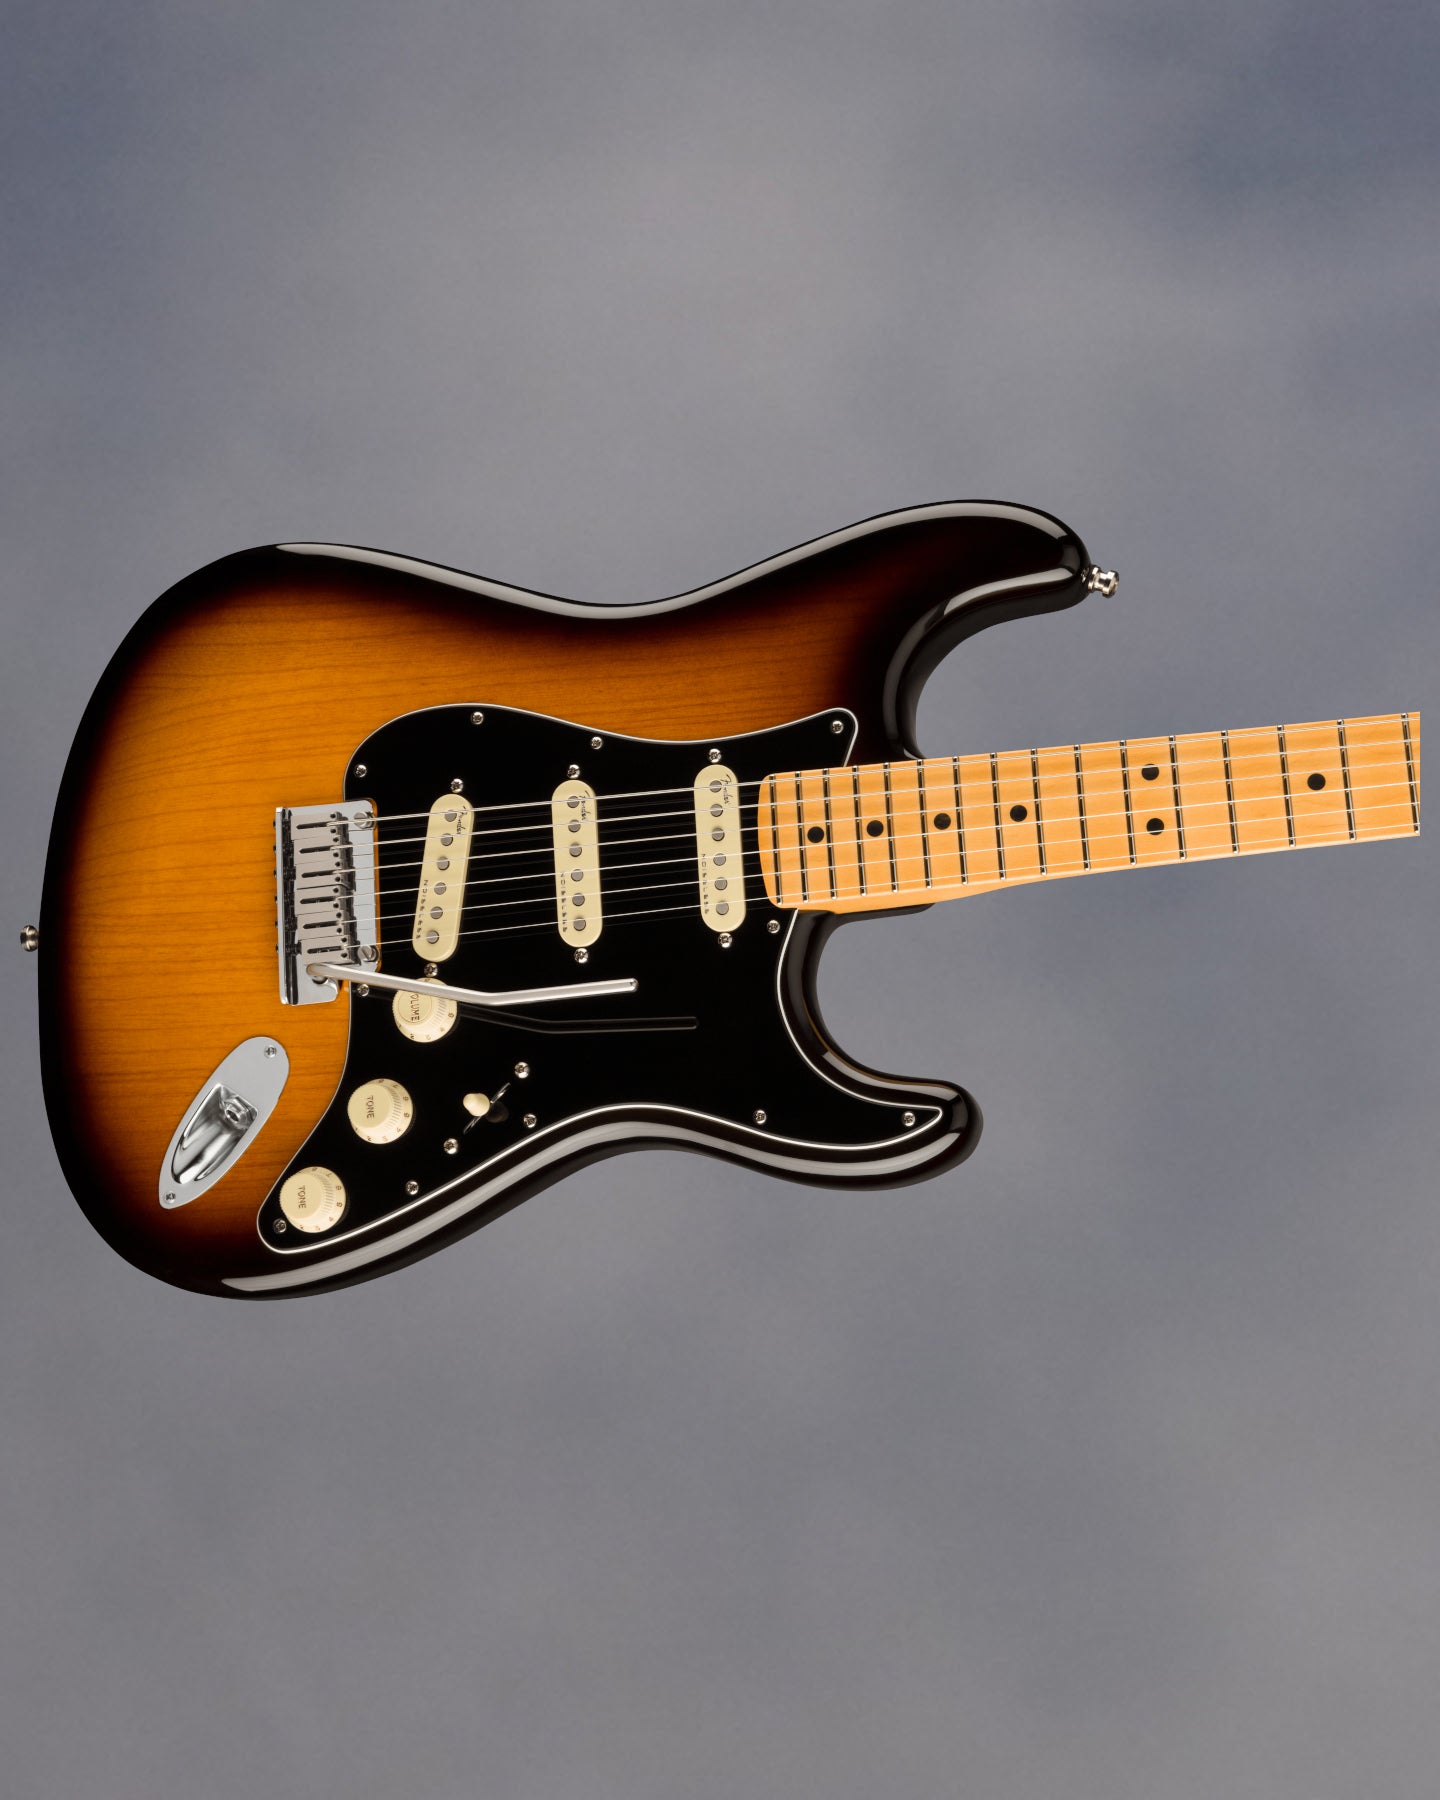 American Ultra Luxe Stratocaster, 2 Color Sunburst